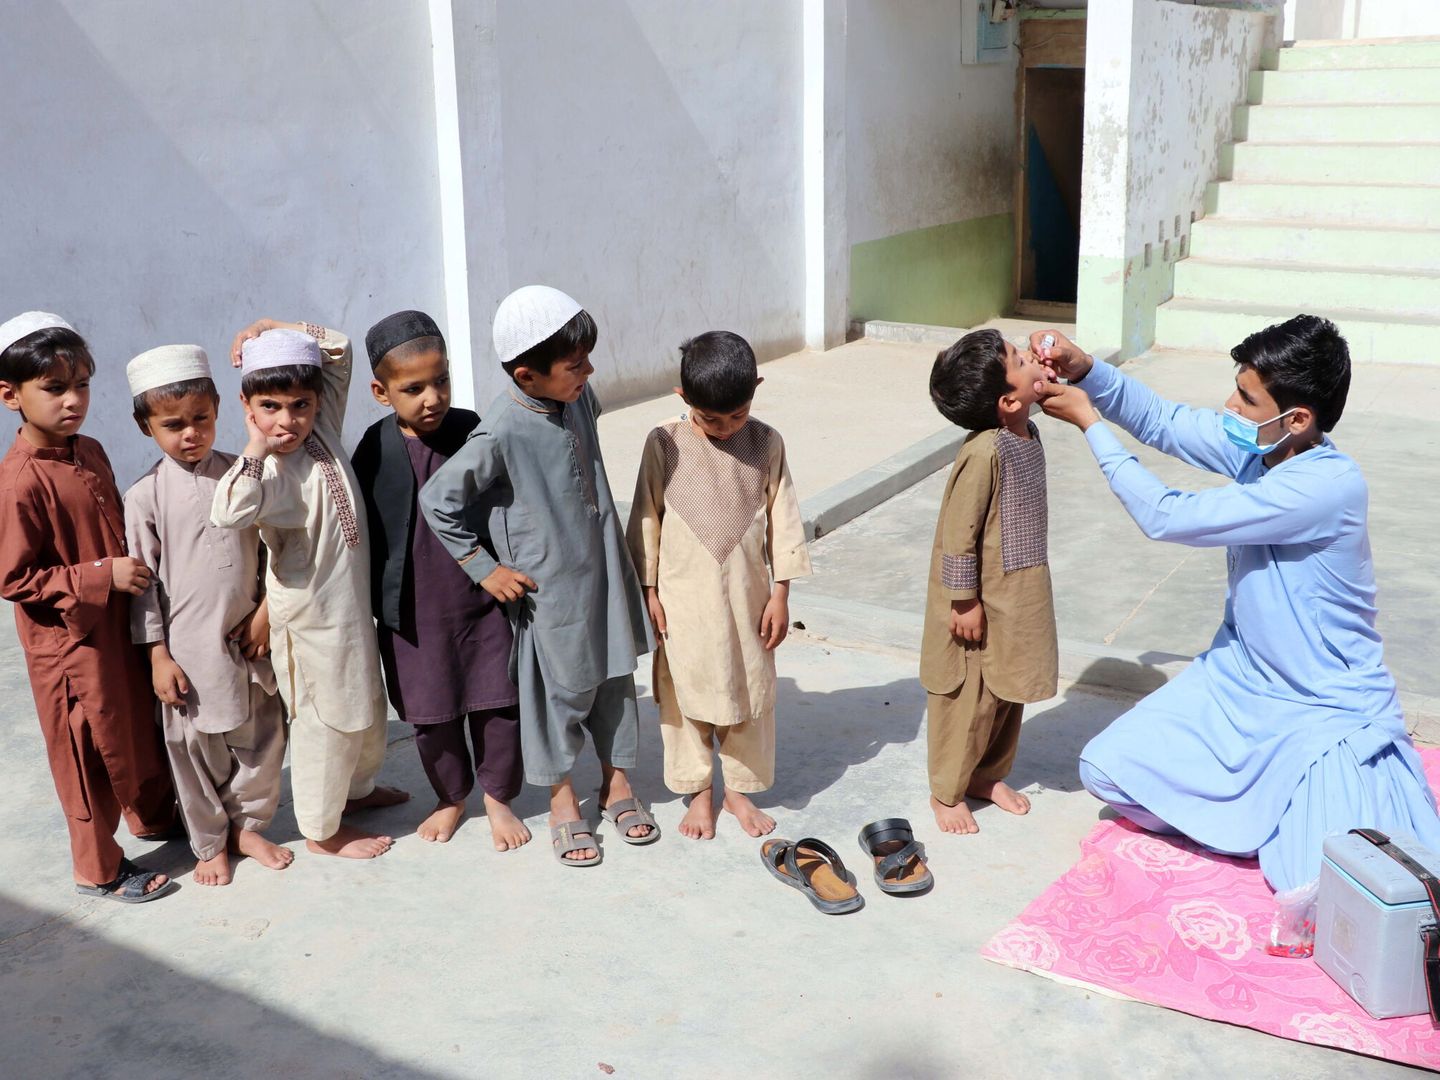 Un trabajador sanitario administra vacunas contra la polio a niños en Afganistán, mayo de 2022. (EFE)